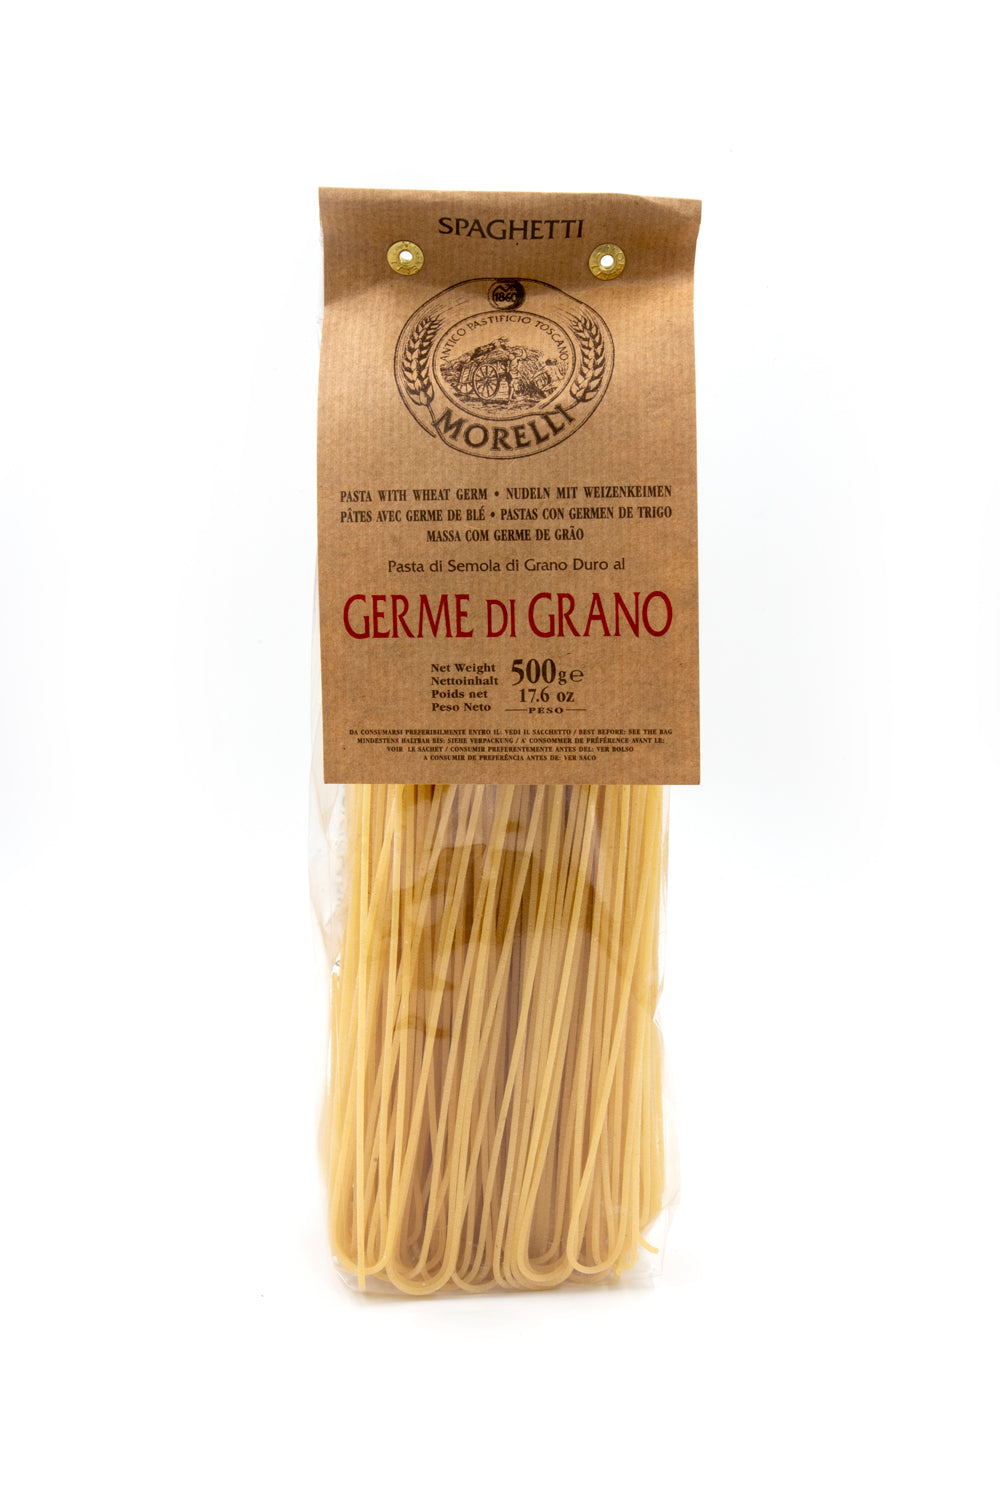 Morelli Spaghetti con Germe di Grano Pasta 500g